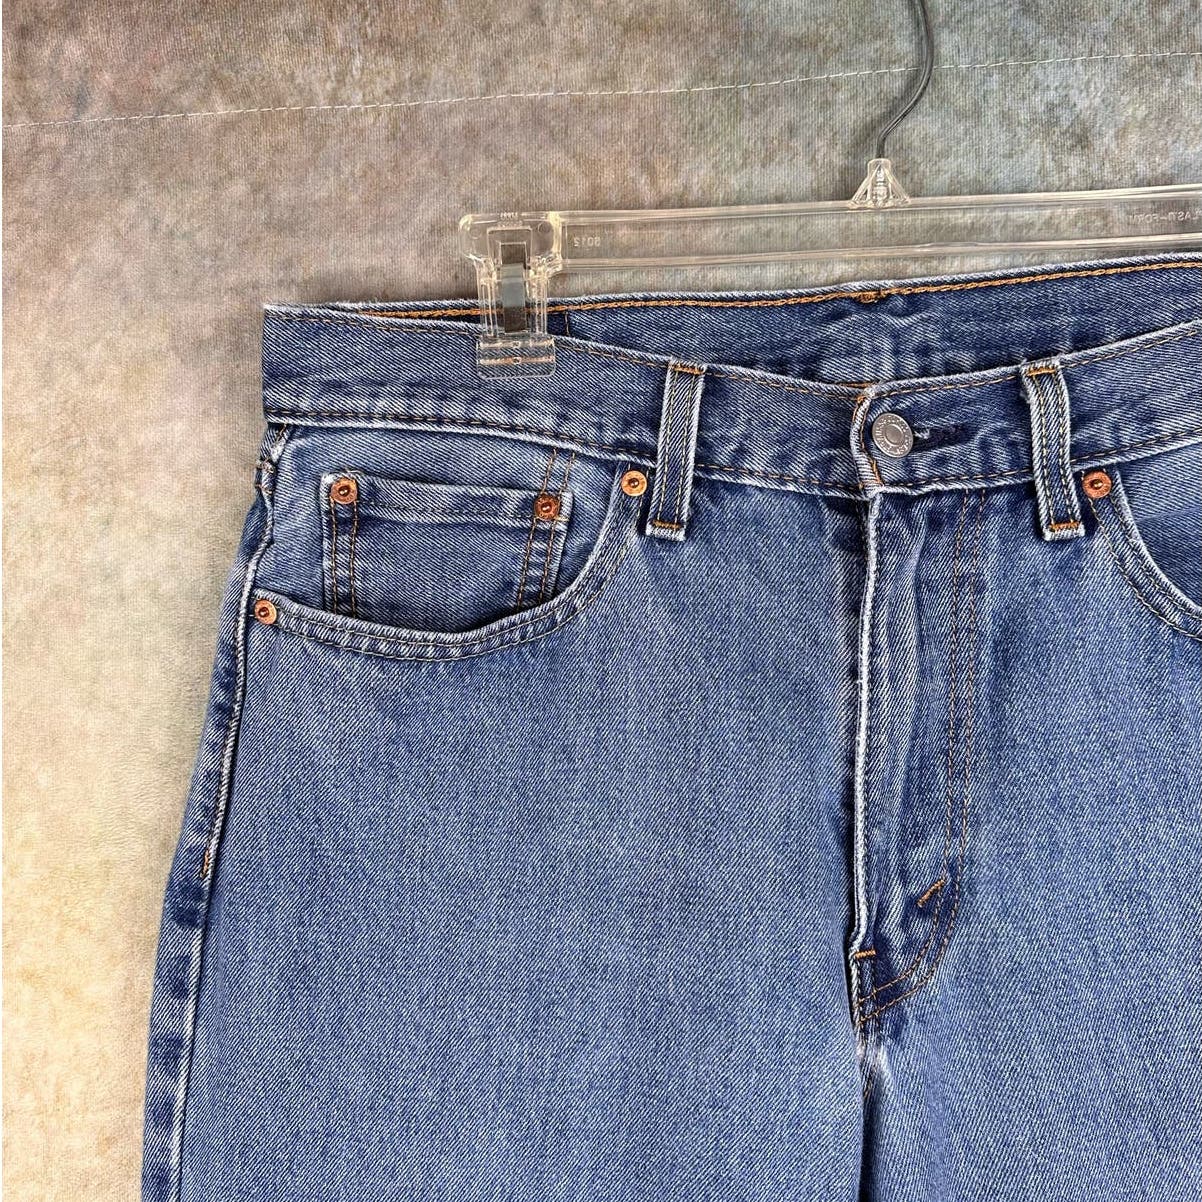 Vintage Levis 550 Denim Jeans 33x32